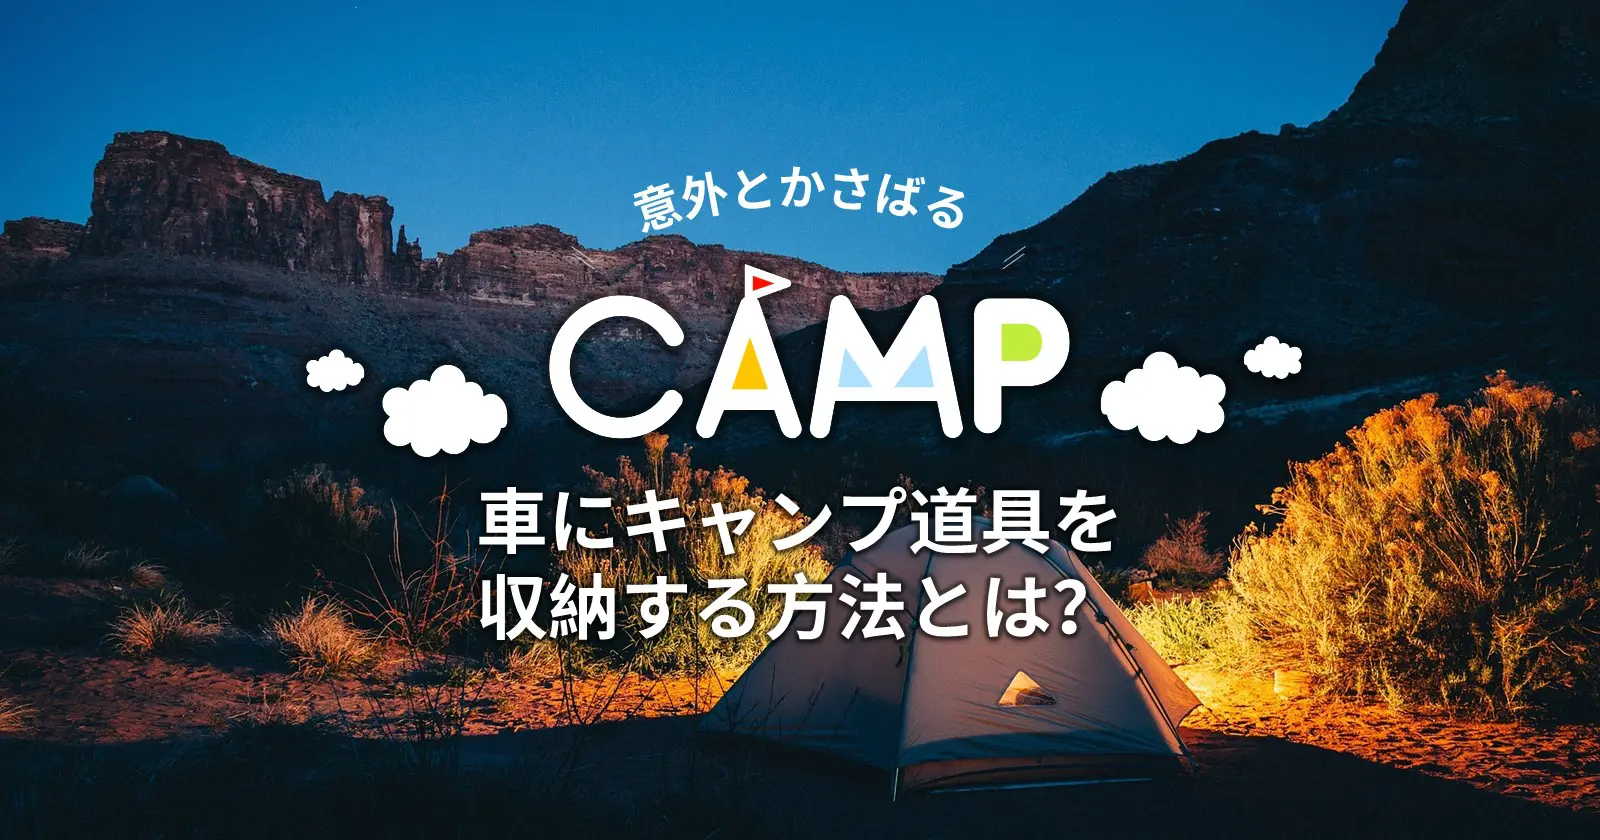 意外とかさばる 車にキャンプ道具を収納する方法とは キャンプ アウトドアのtakibi タキビ